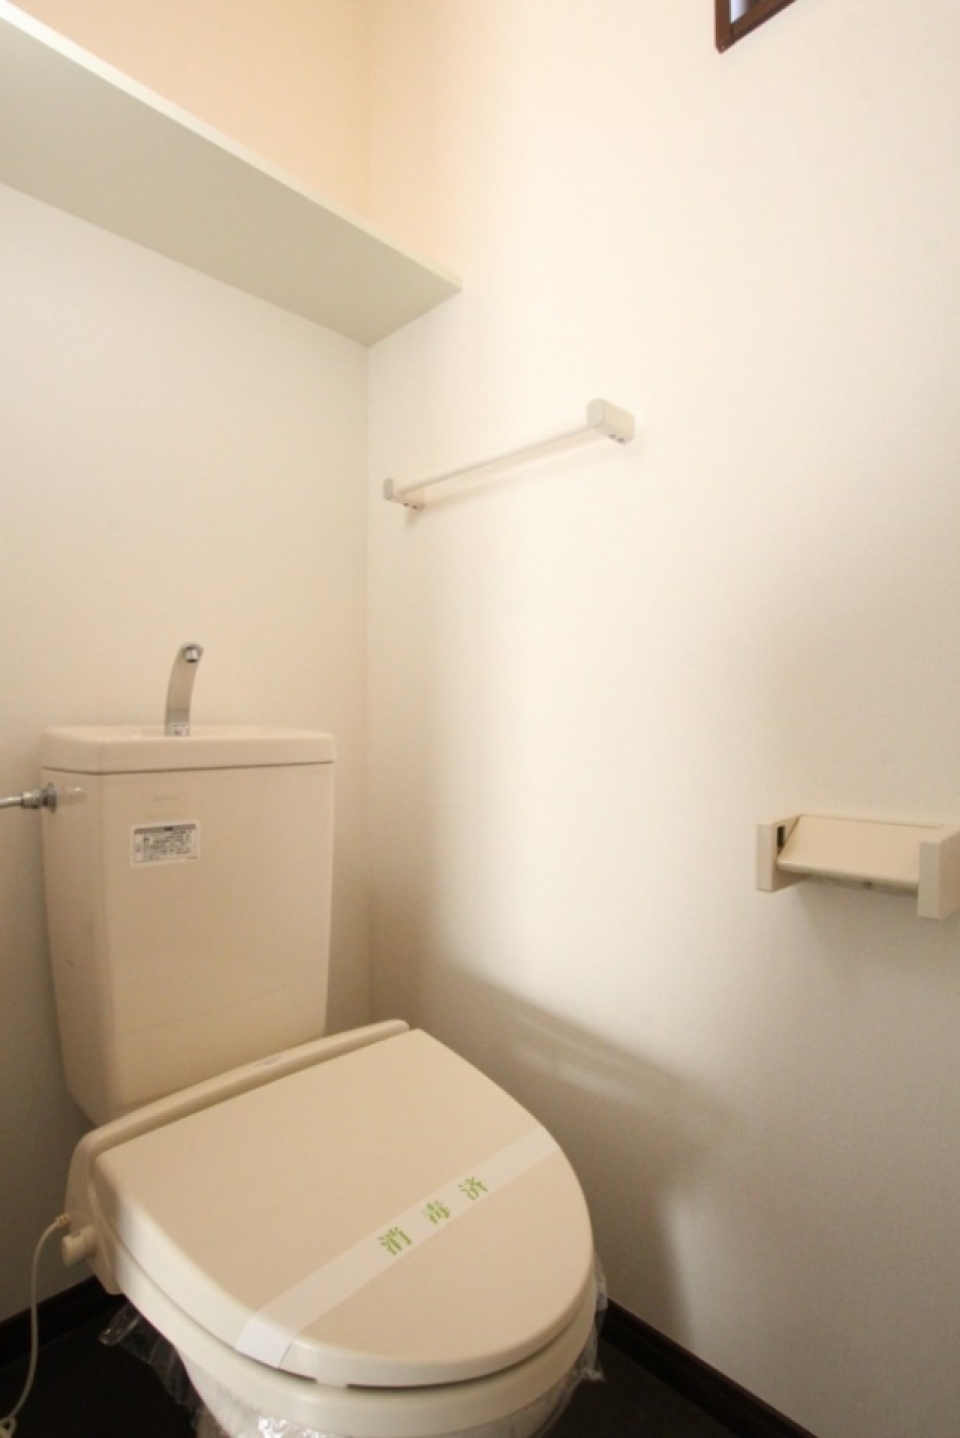 電源コンセントはあるのでシャワートイレの設置も可能。